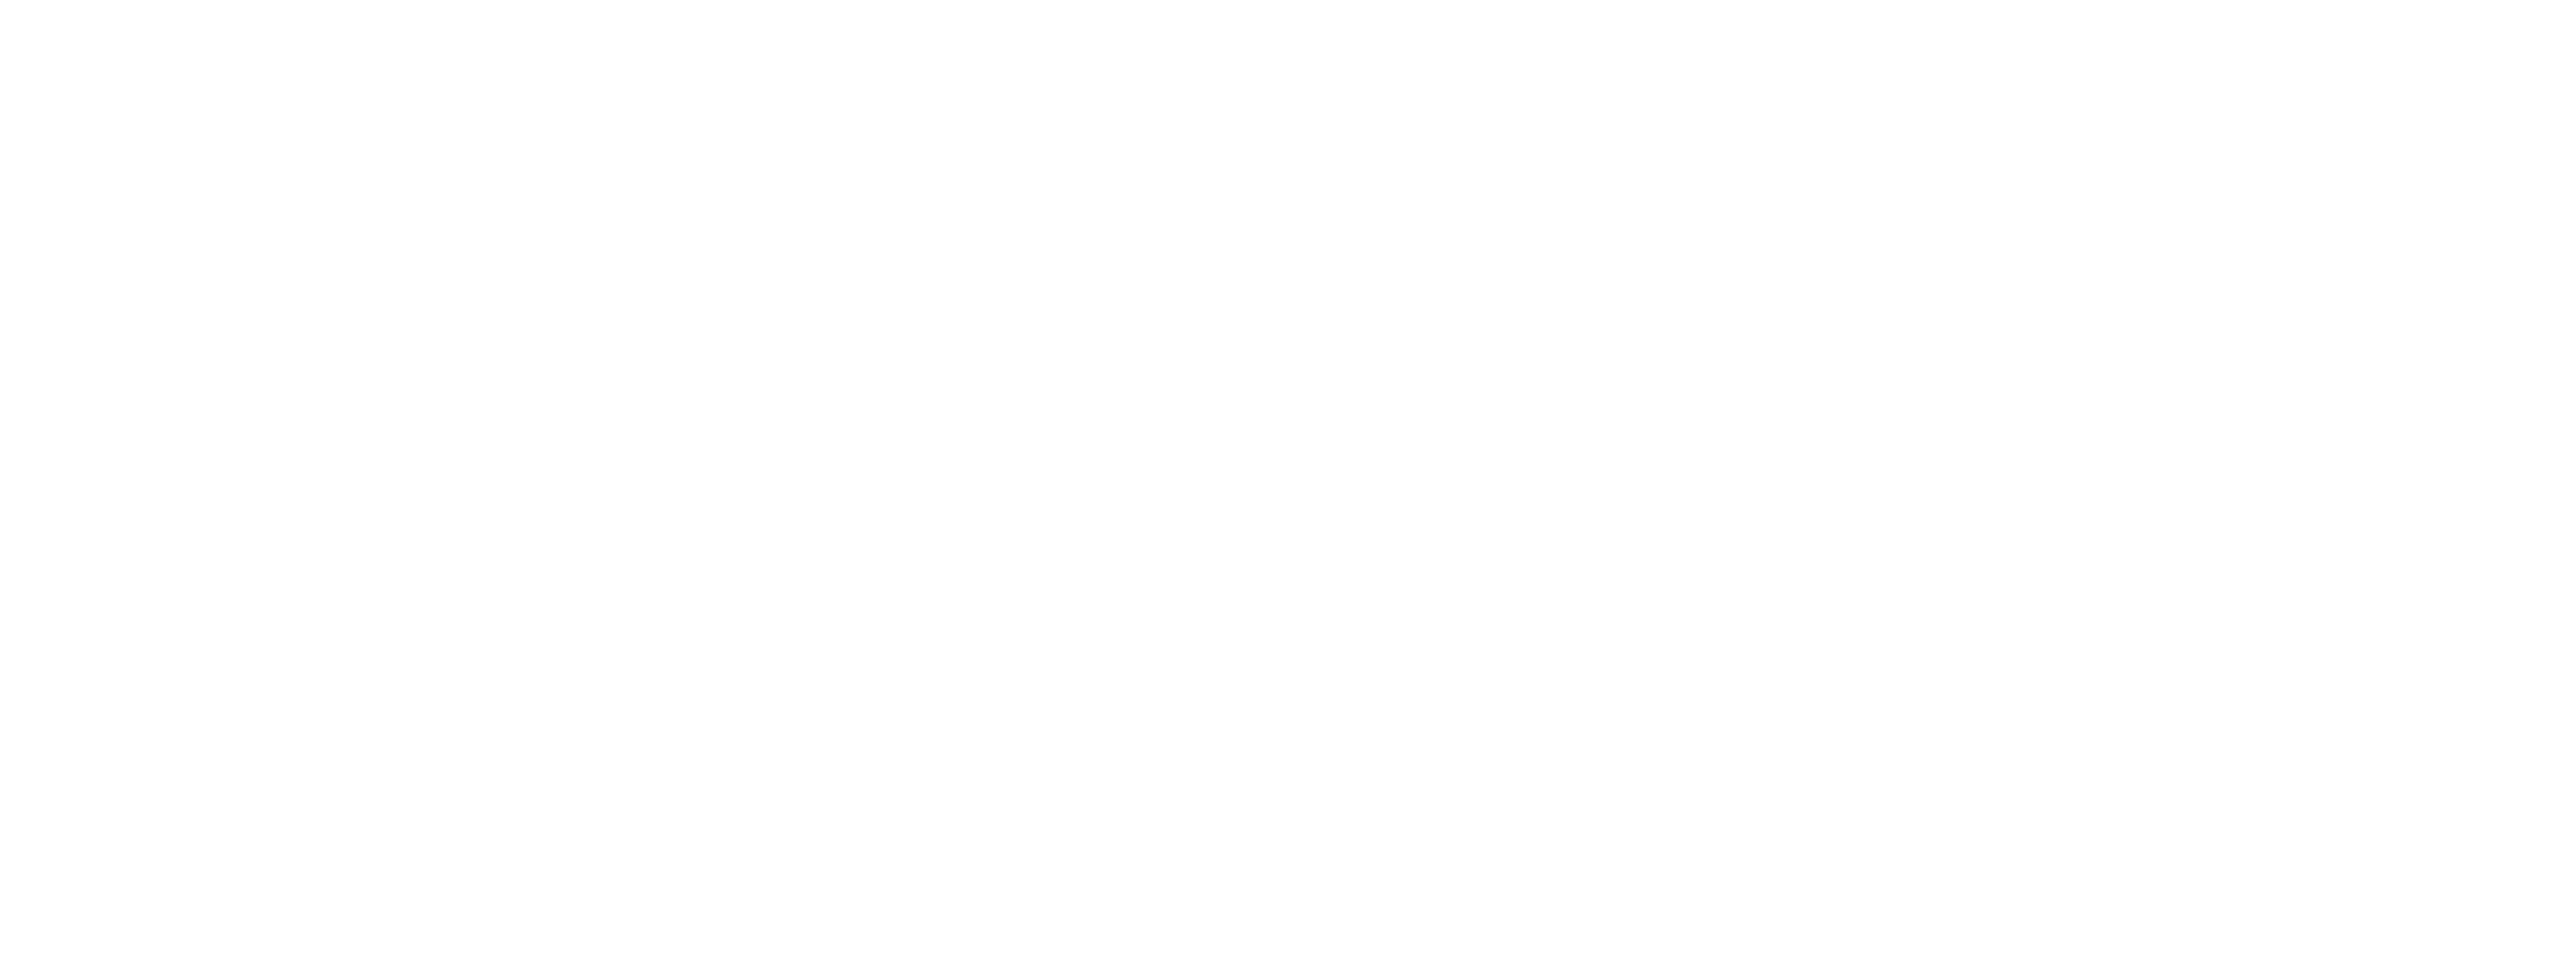 The Lutrinae